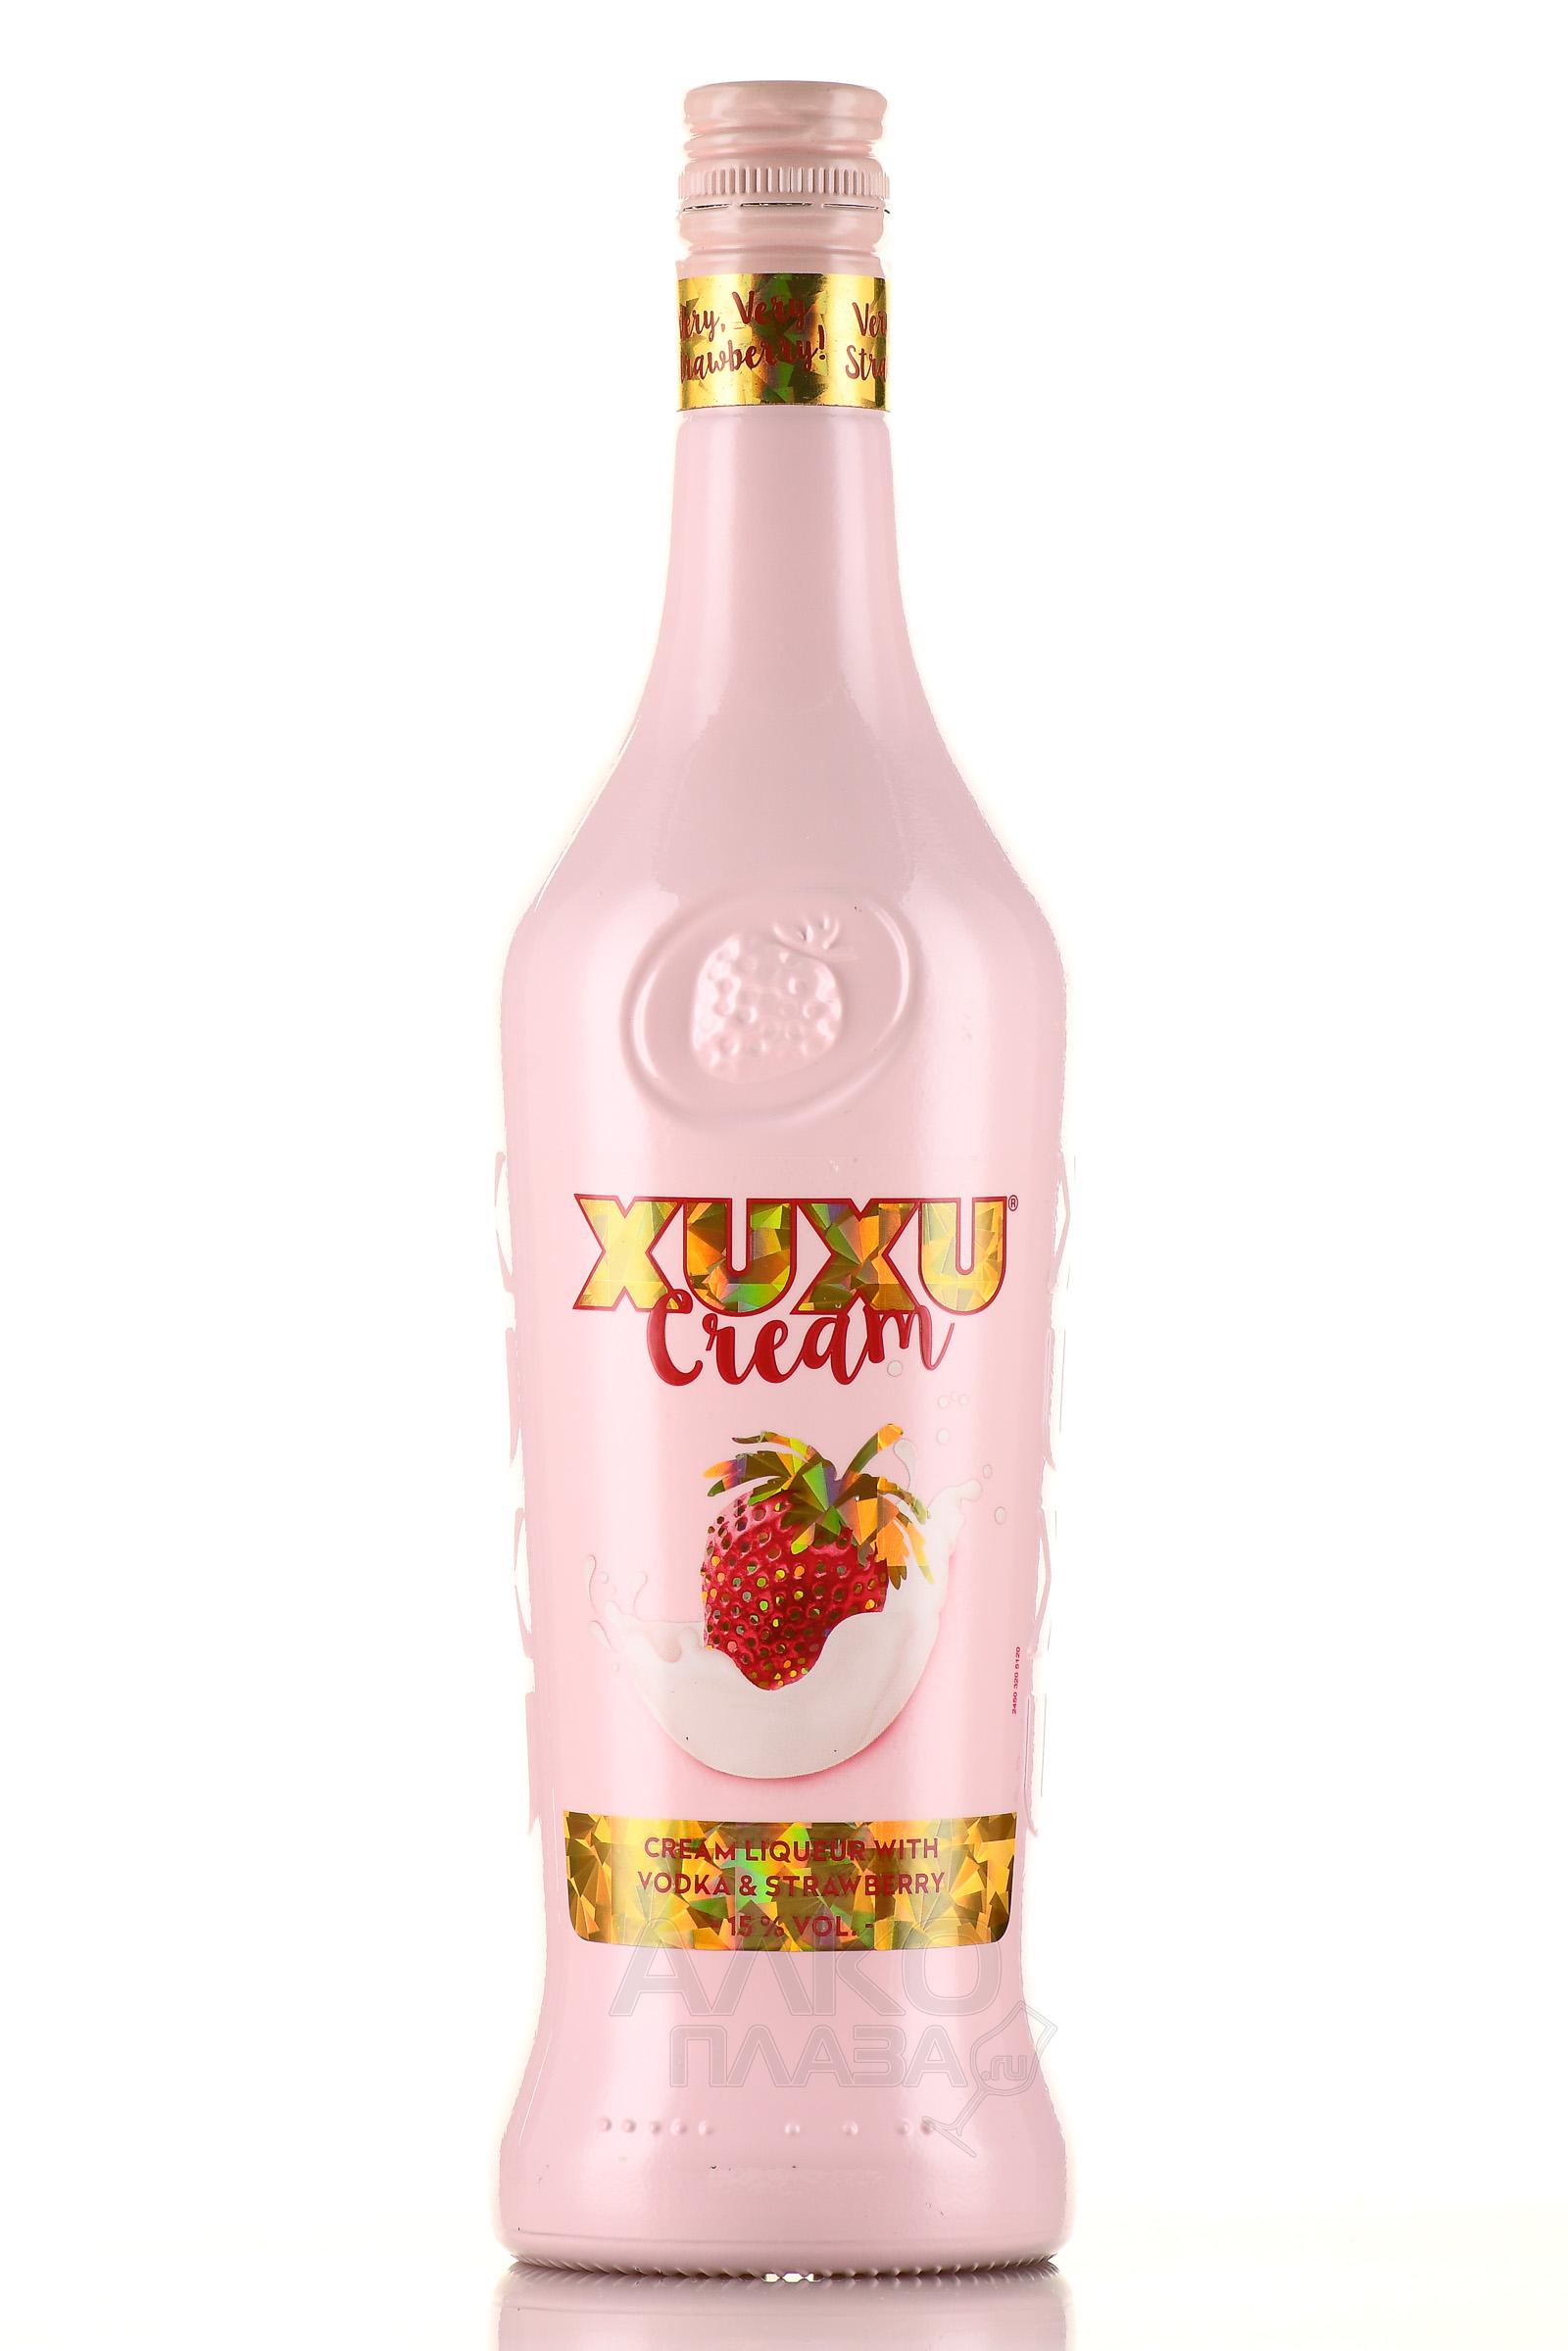 XUXU Cream - купить ликер эмульсионный Ксу-Ксу Крем 0.7 л - цена